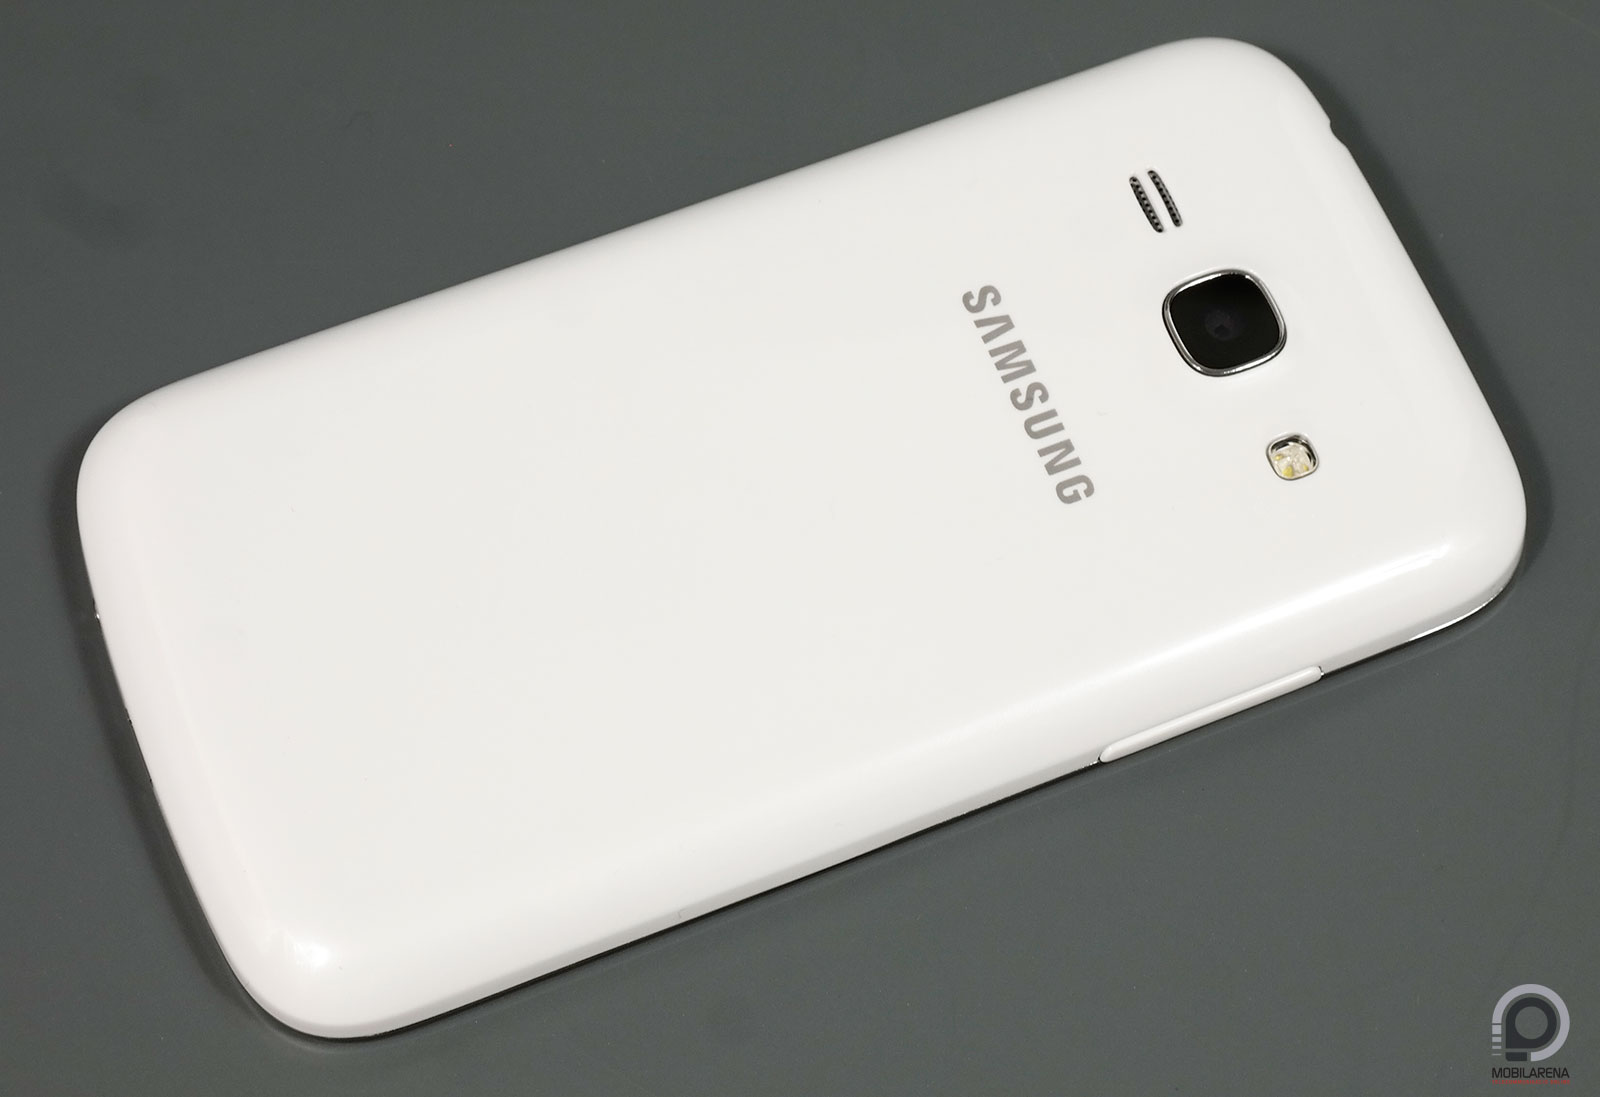 Samsung Galaxy Ace 3 - olcsó S-ág - Mobilarena Okostelefon teszt -  Nyomtatóbarát verzió